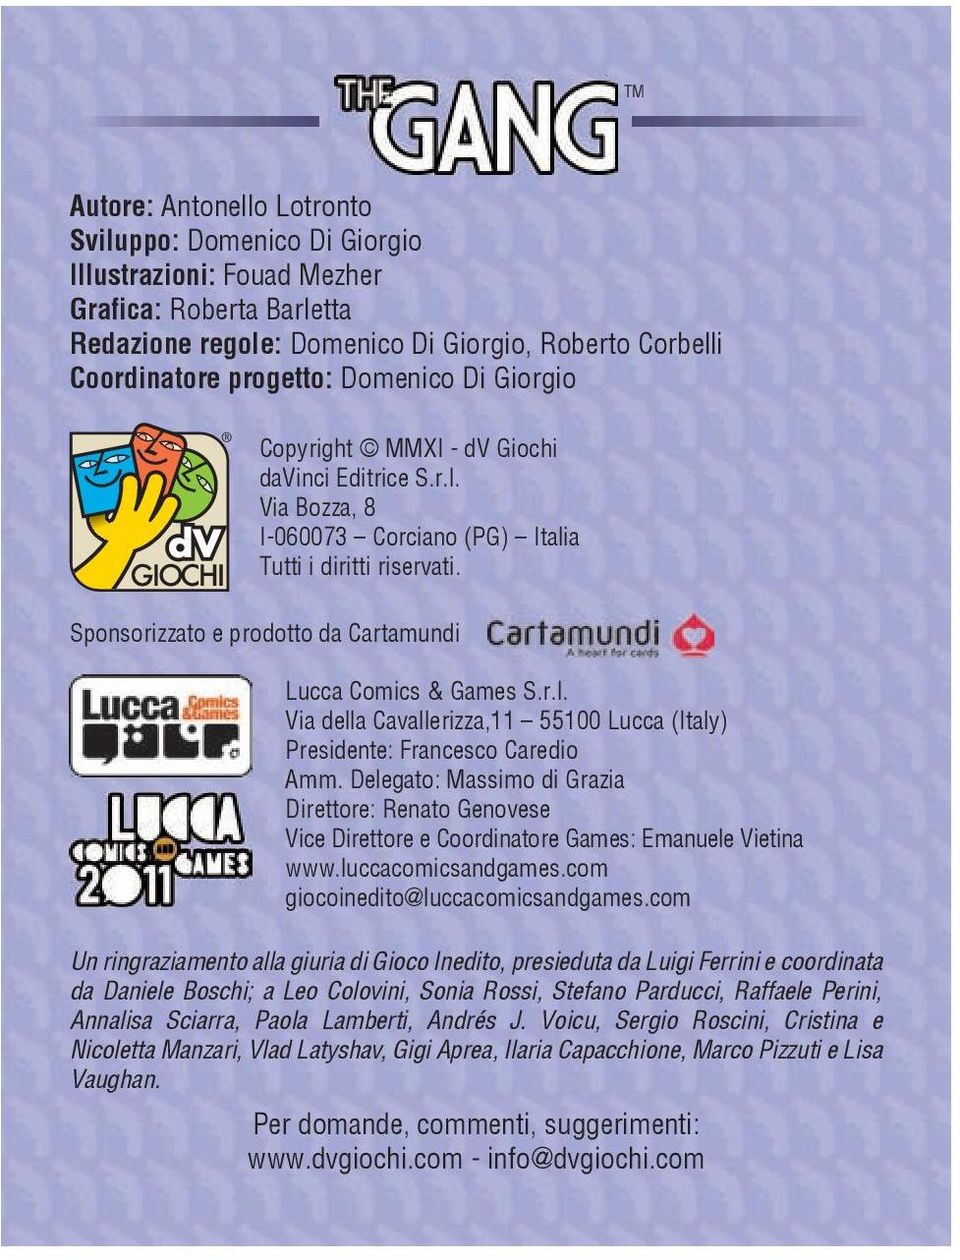 Sponsorizzato e prodotto da Cartamundi Lucca Comics & Games S.r.l. Via della Cavallerizza,11 55100 Lucca (Italy) Presidente: Francesco Caredio Amm.